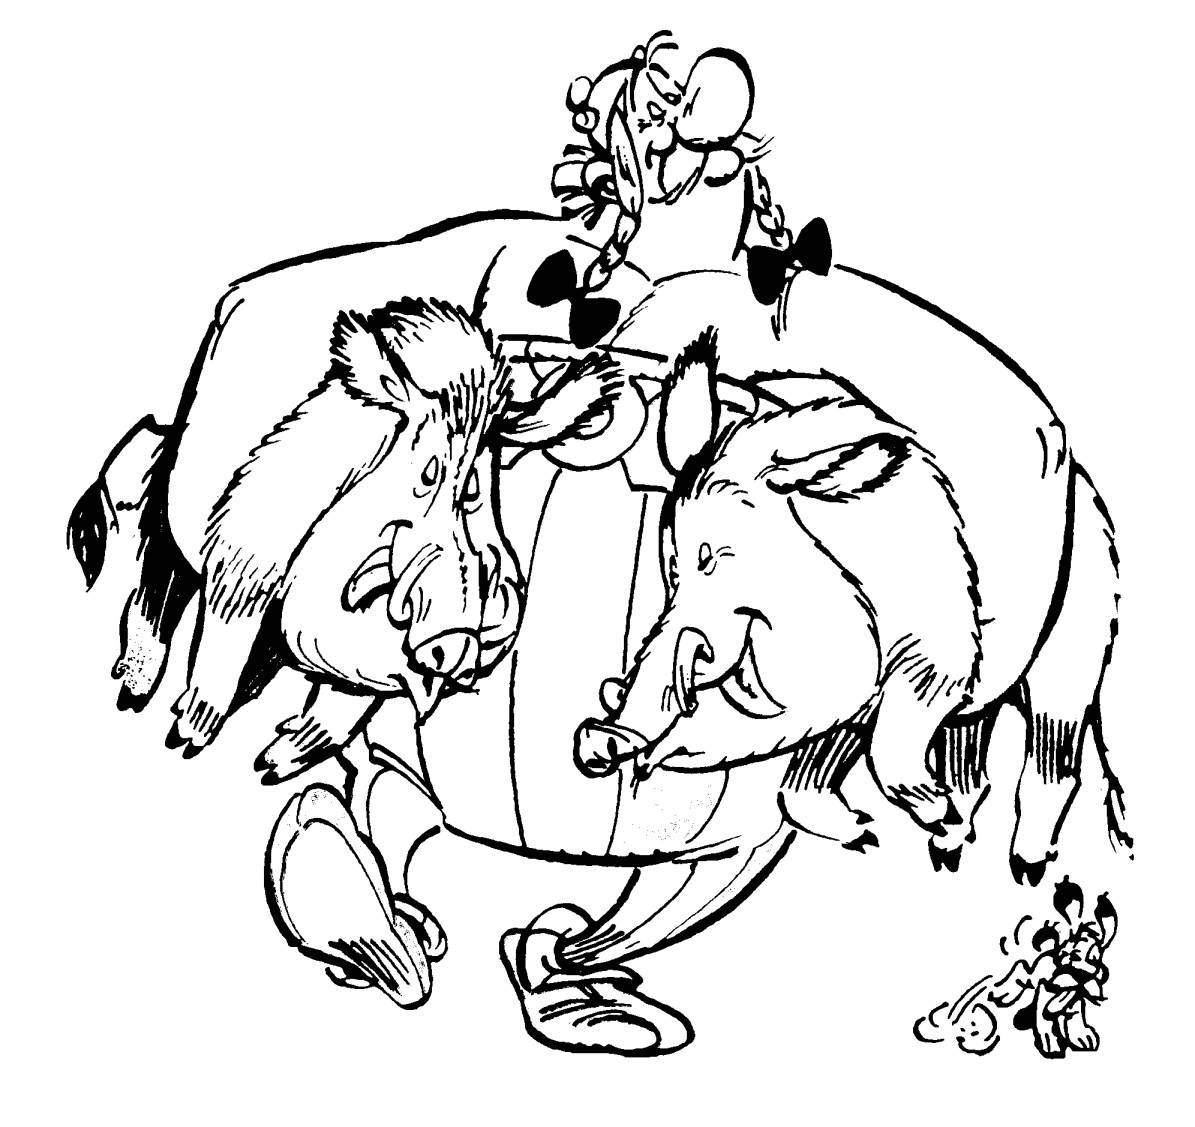 Asterix Obélix rentre de la chasse avec 2 sangliers